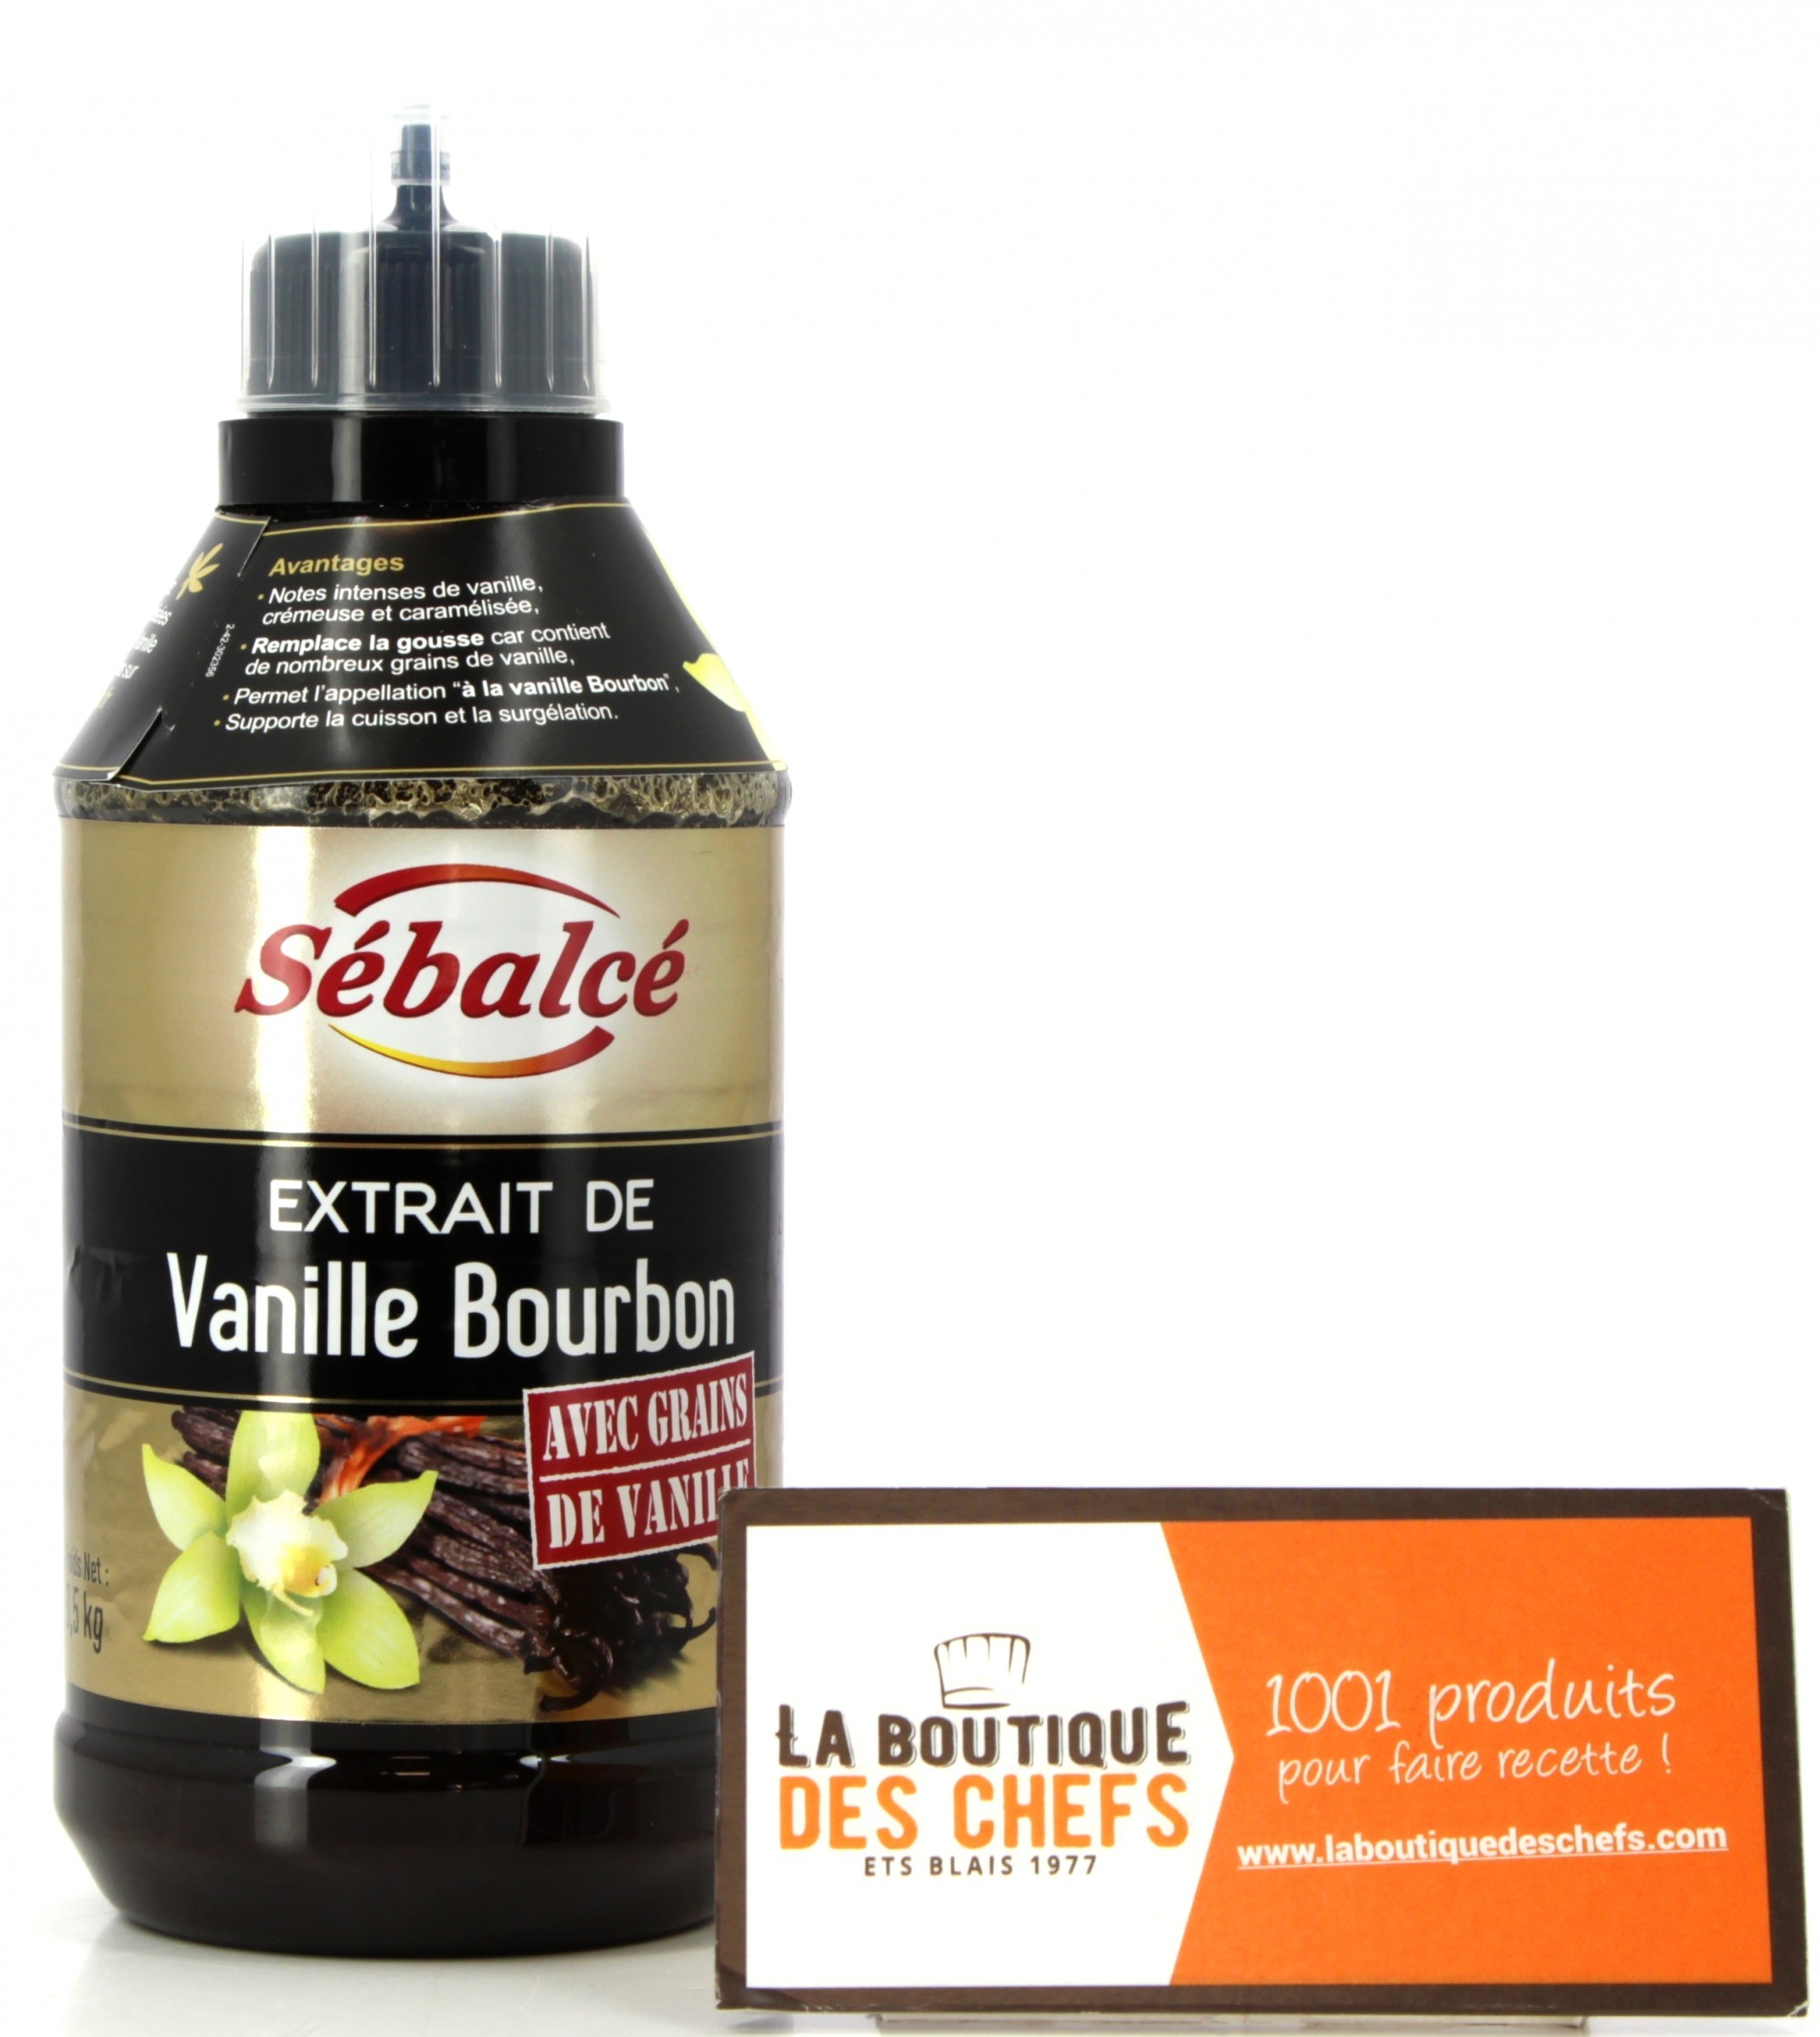 Extrait de vanille Bourbon liquide Dr.Oetker sucré (35ml) acheter